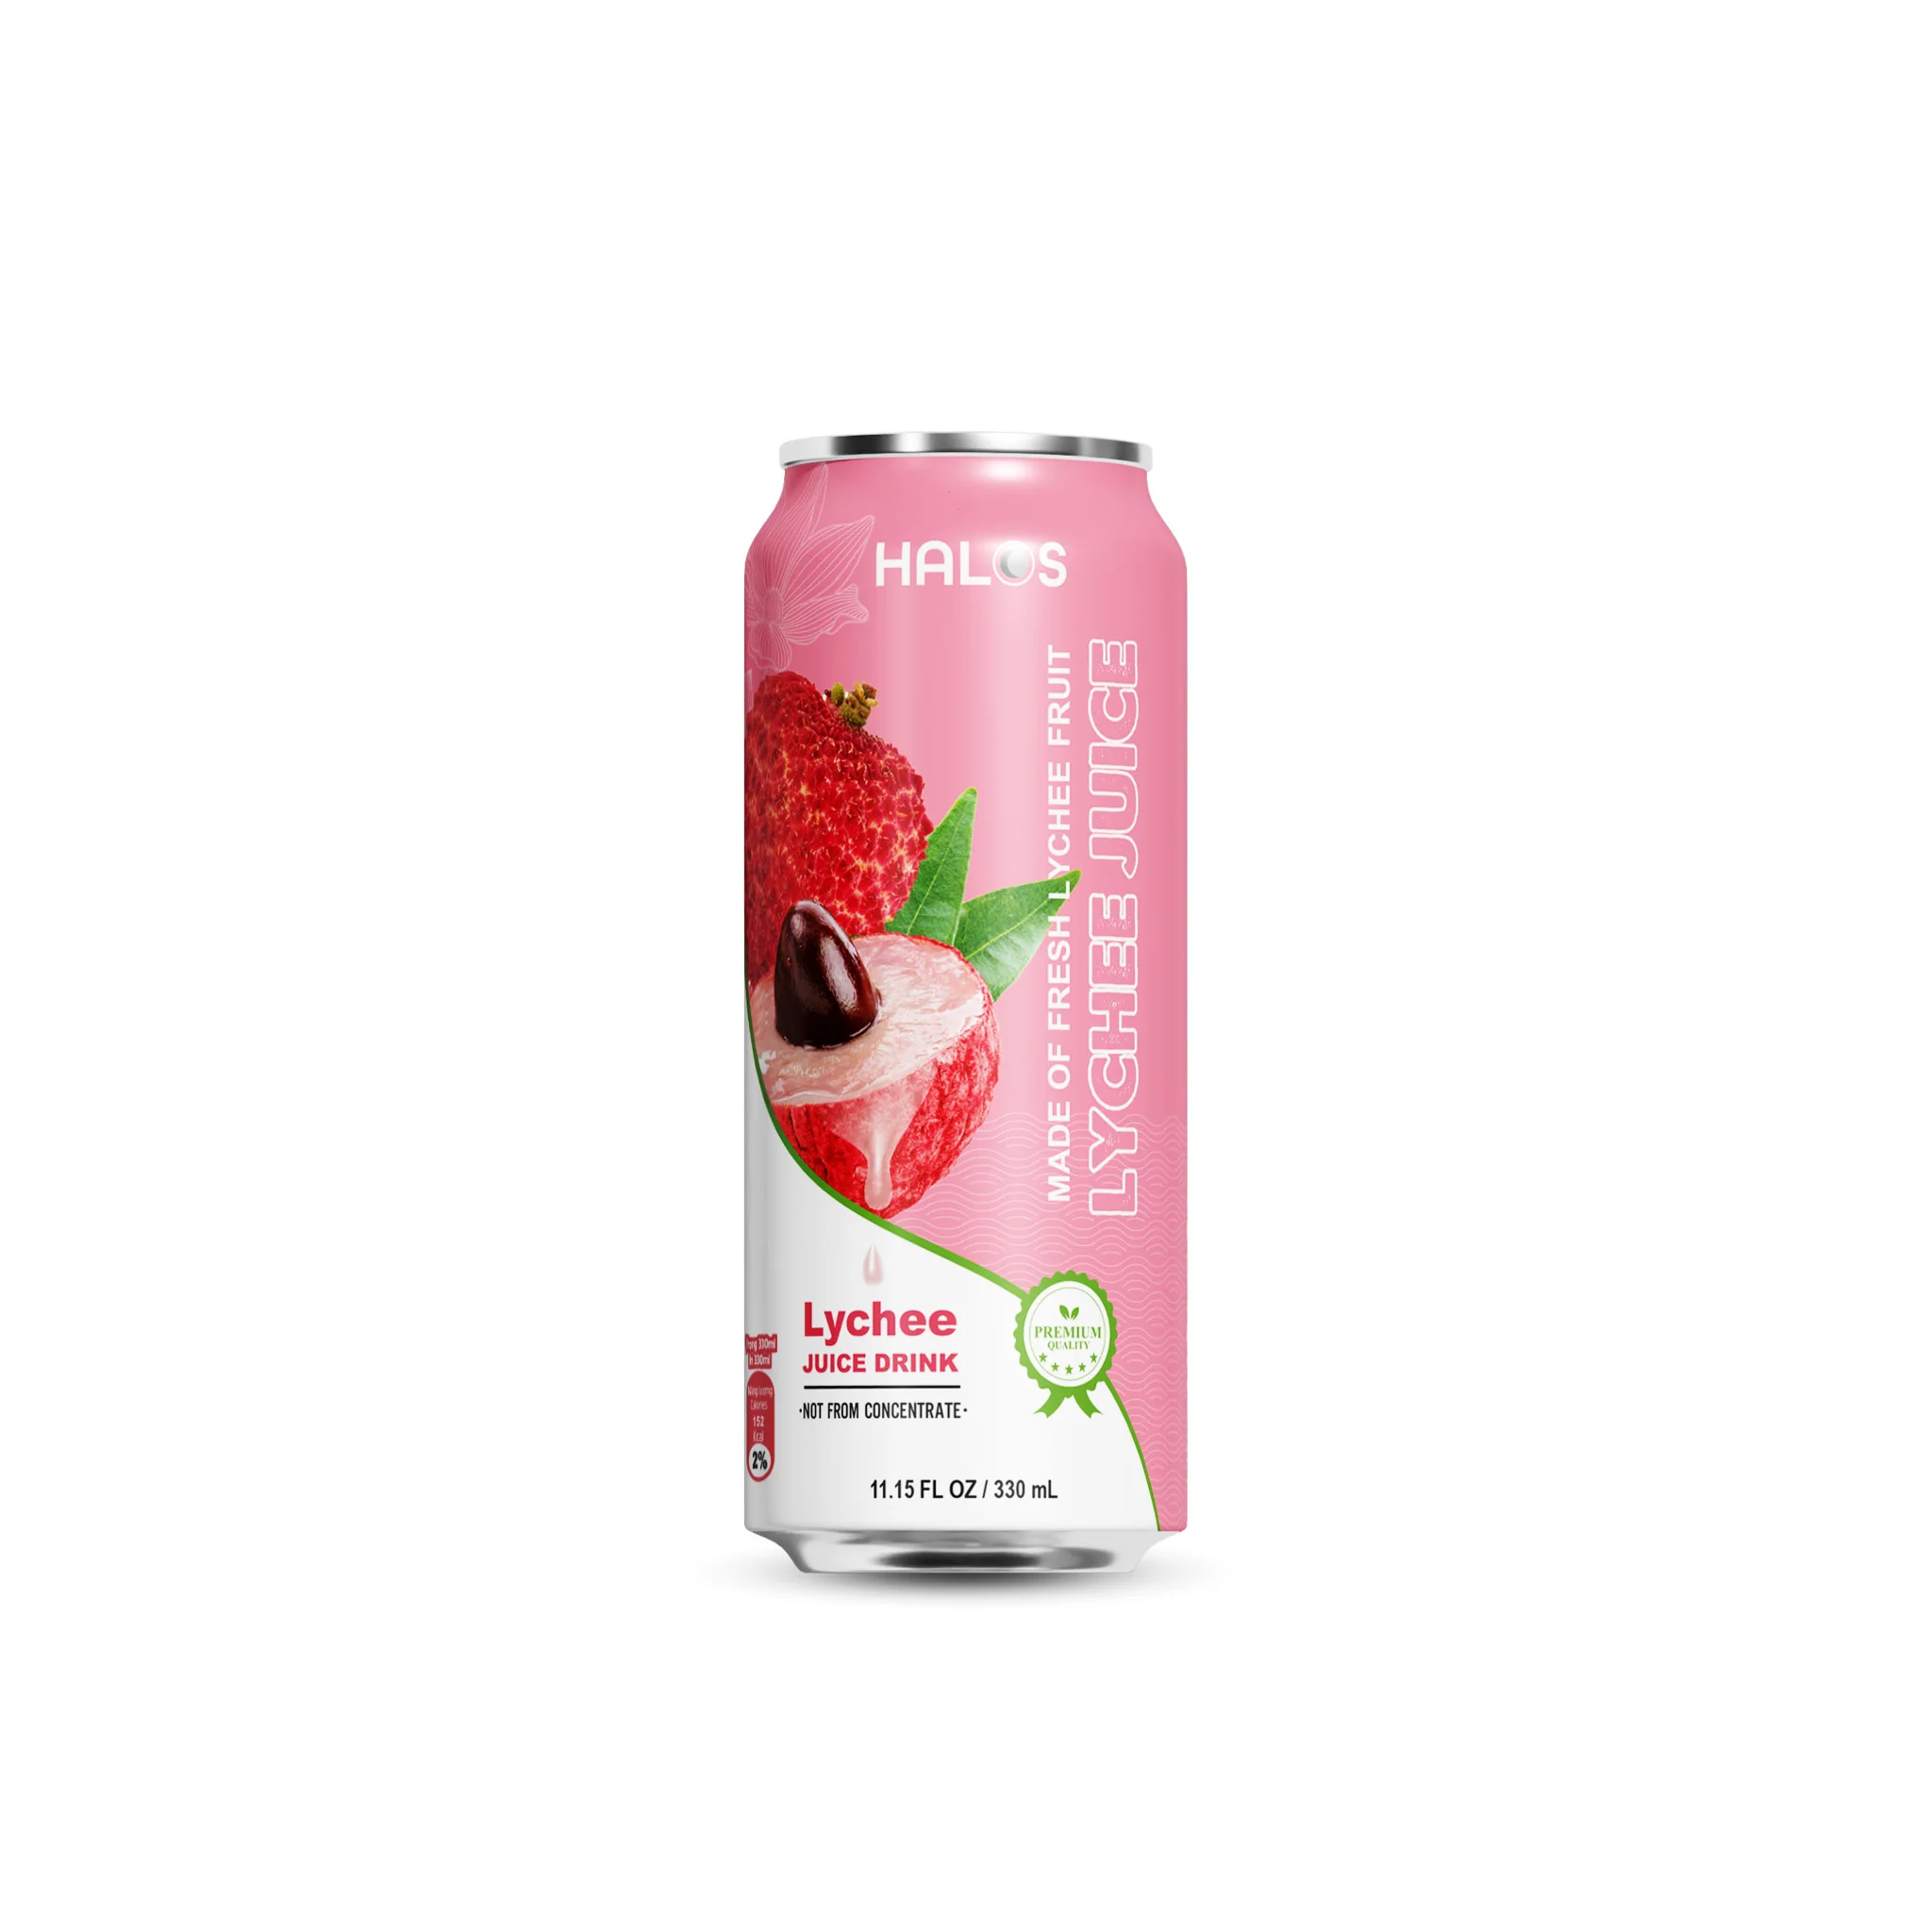 Halos/OEM Pineapple Juice Drink in 330ml Can